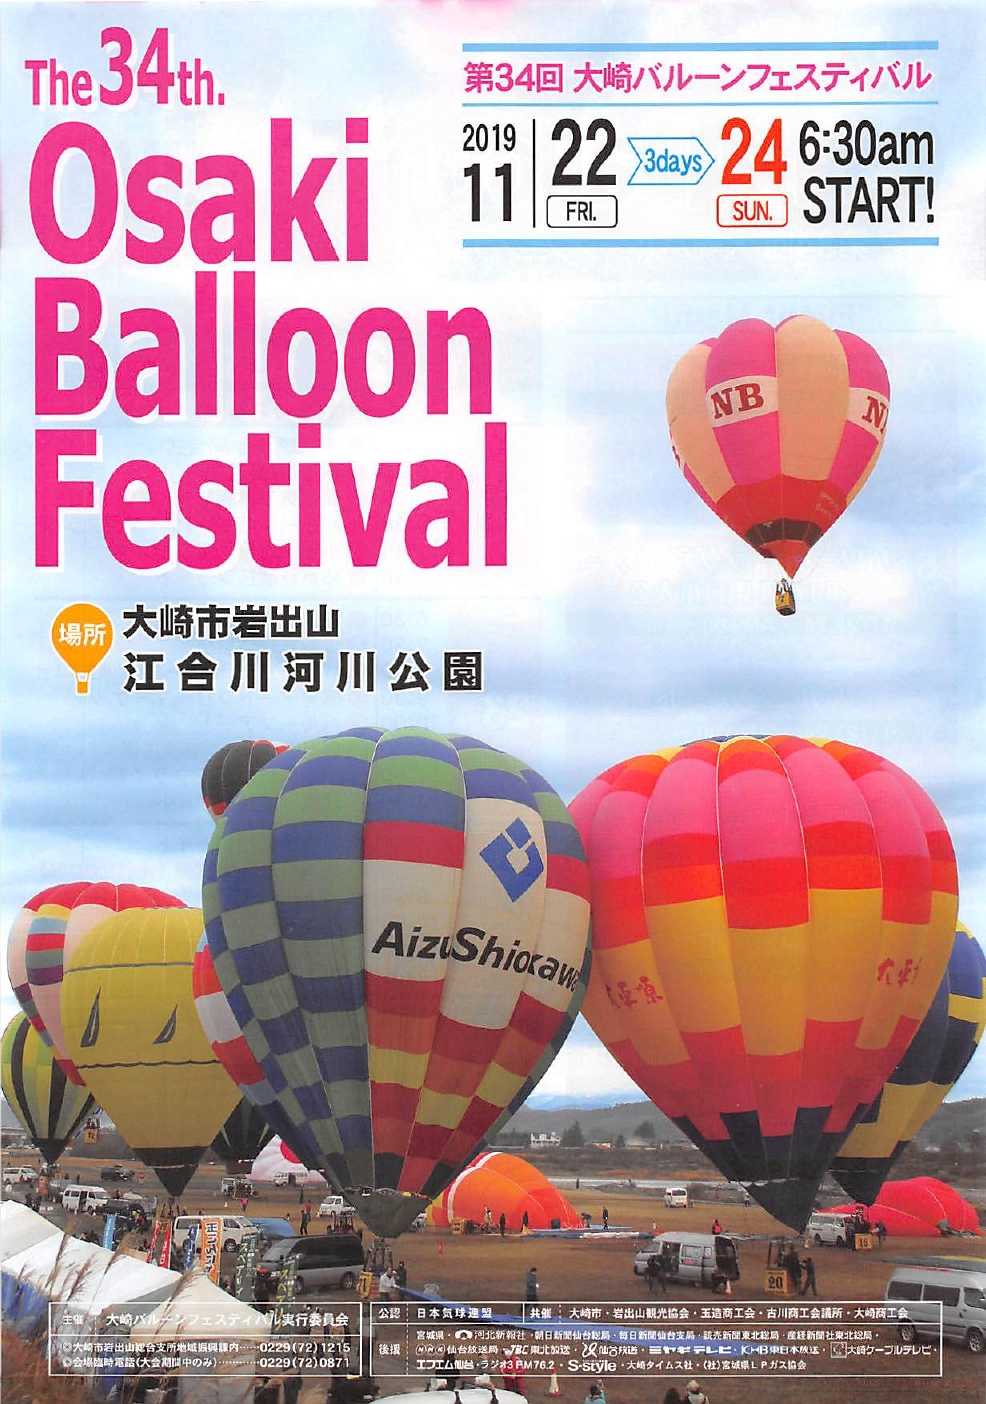 圧巻の景色 先着順で気球試乗体験も 大崎バルーンフェスティバル19は 11 22 11 24 大崎市 とみやー